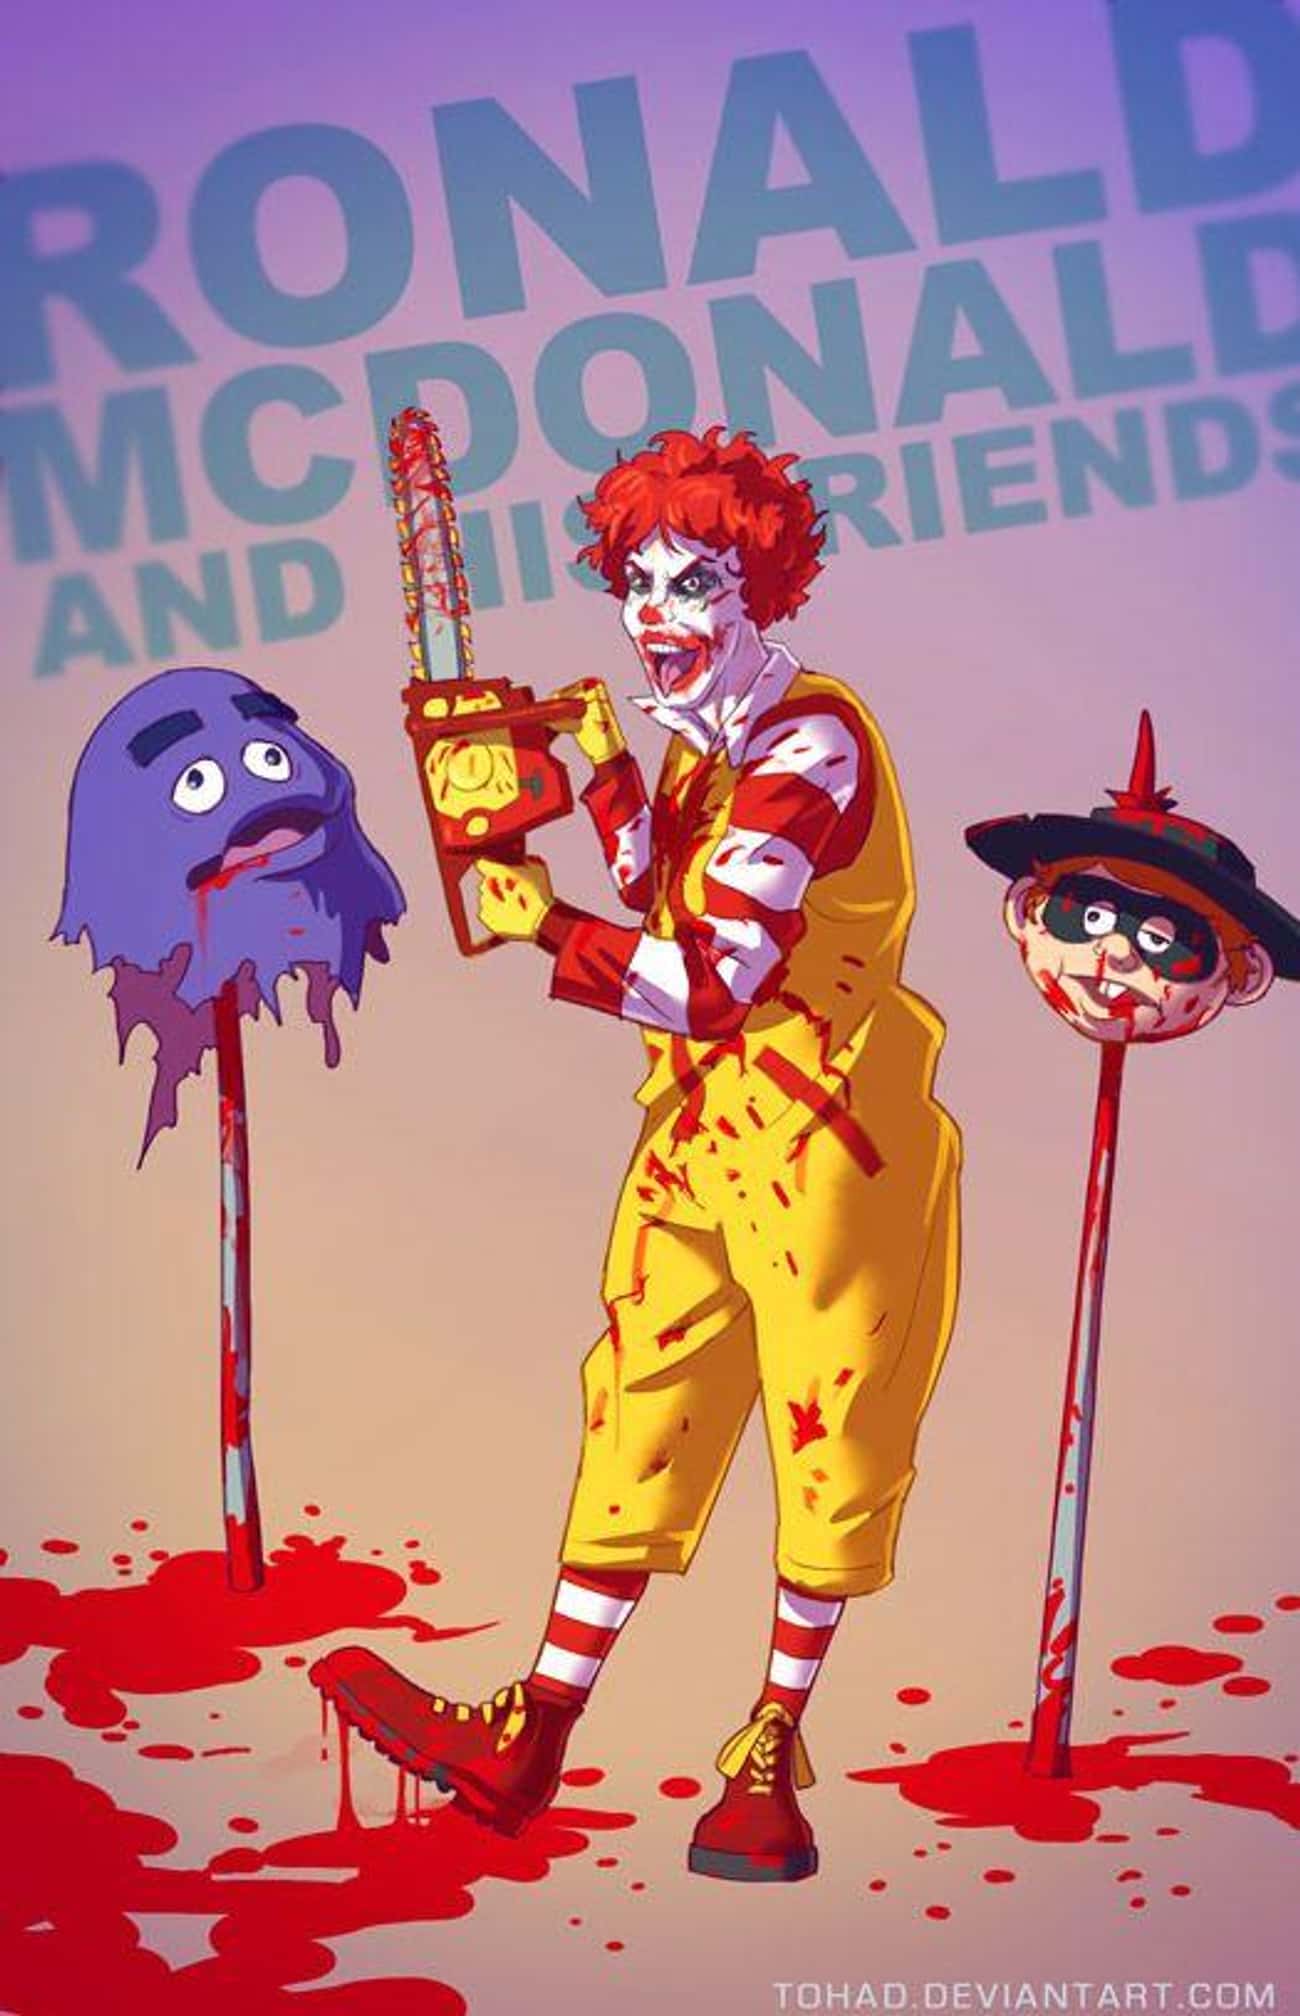 Ronald McDonald & His Friends